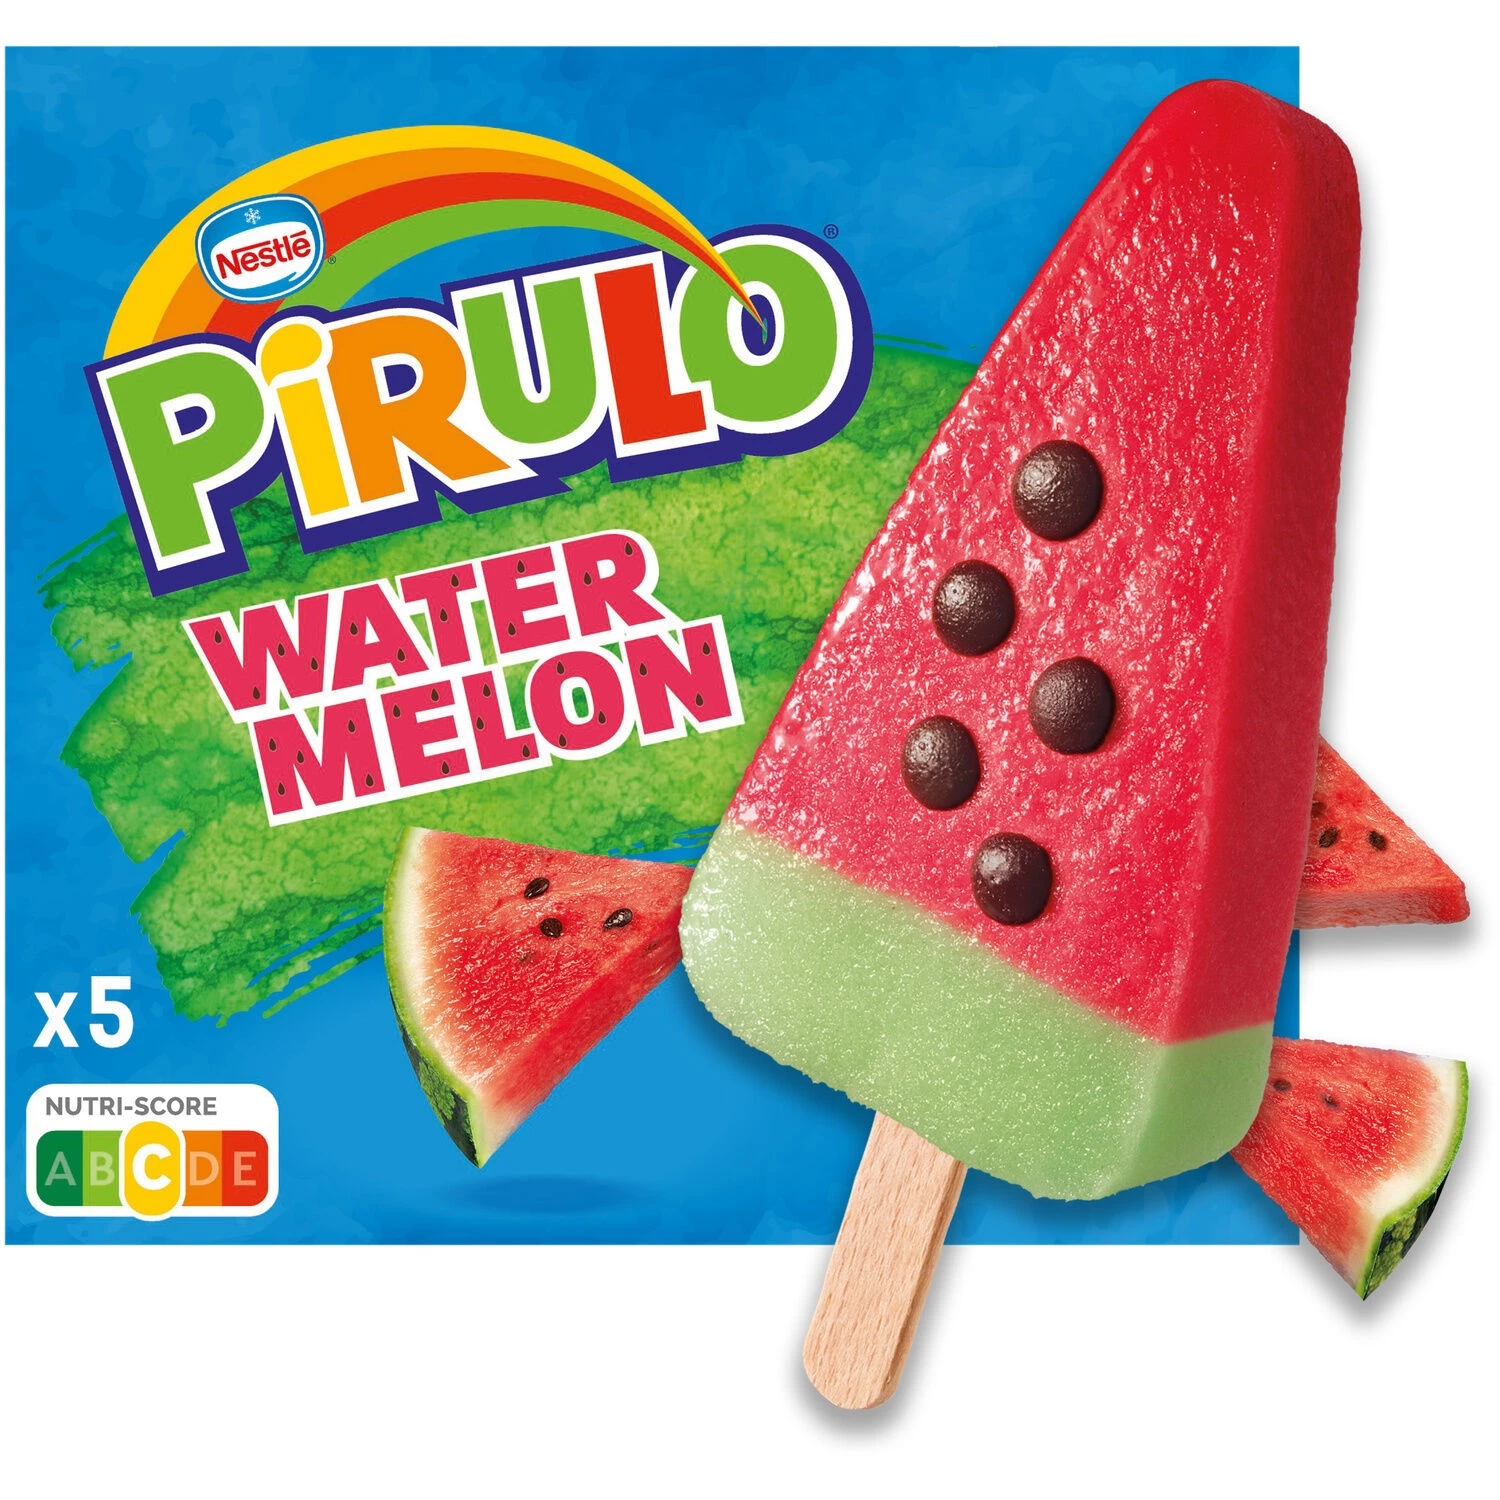 335g Pirulo Watermelon X5